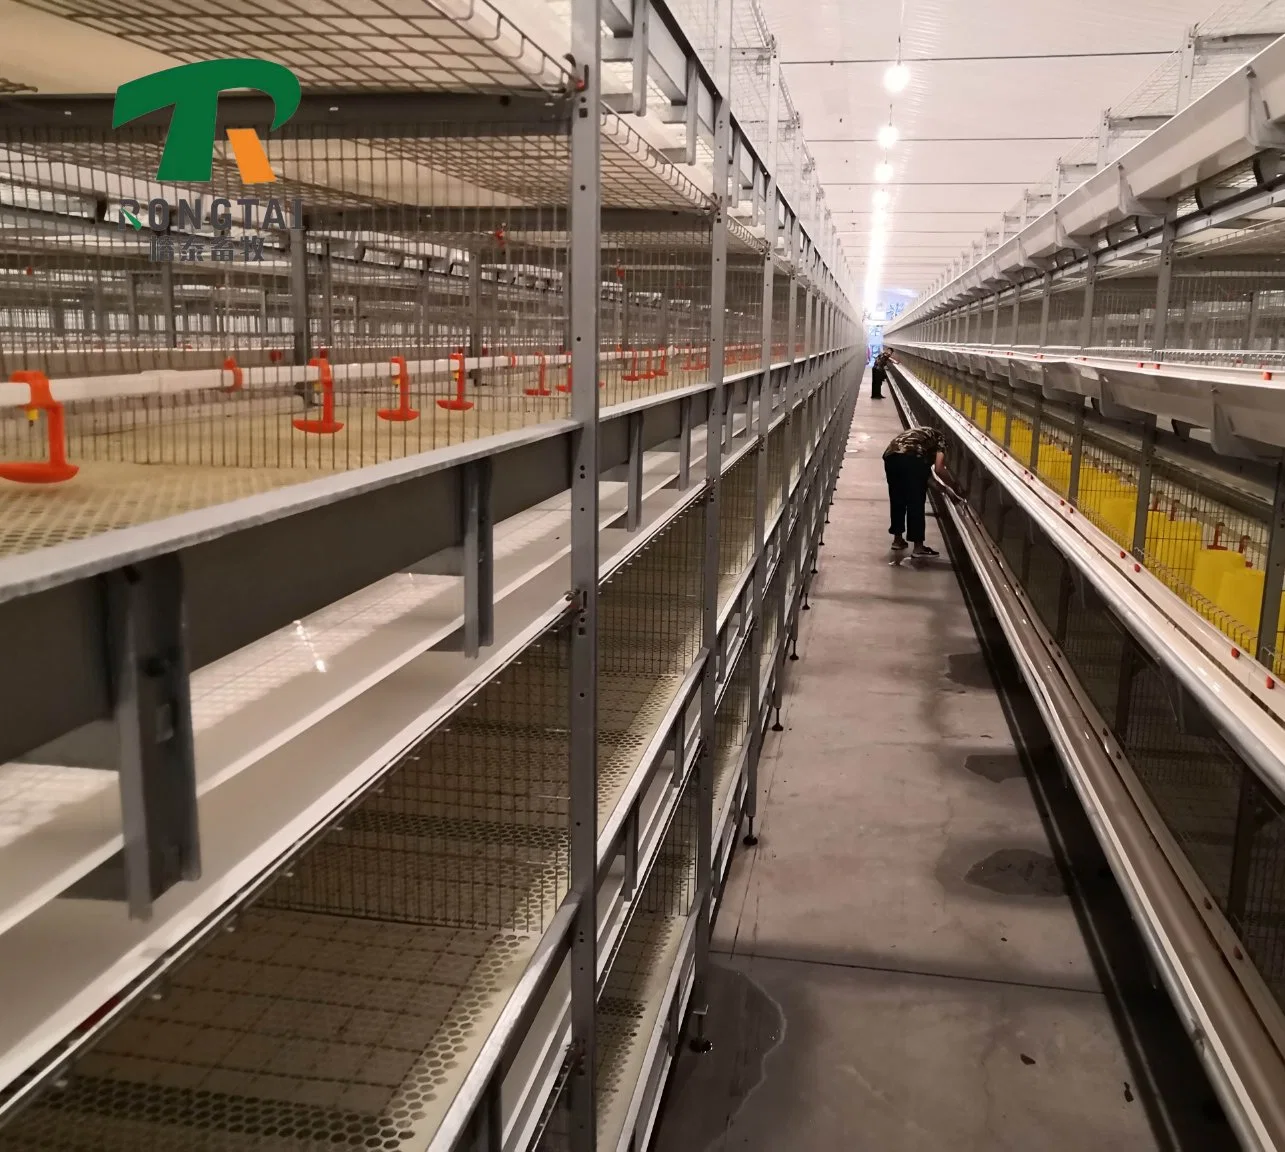 Varias capas Hot-Galvanized automático bastidor H granja avícola de la batería/agricultura equipos para la capa de Pollo Gallina Cage